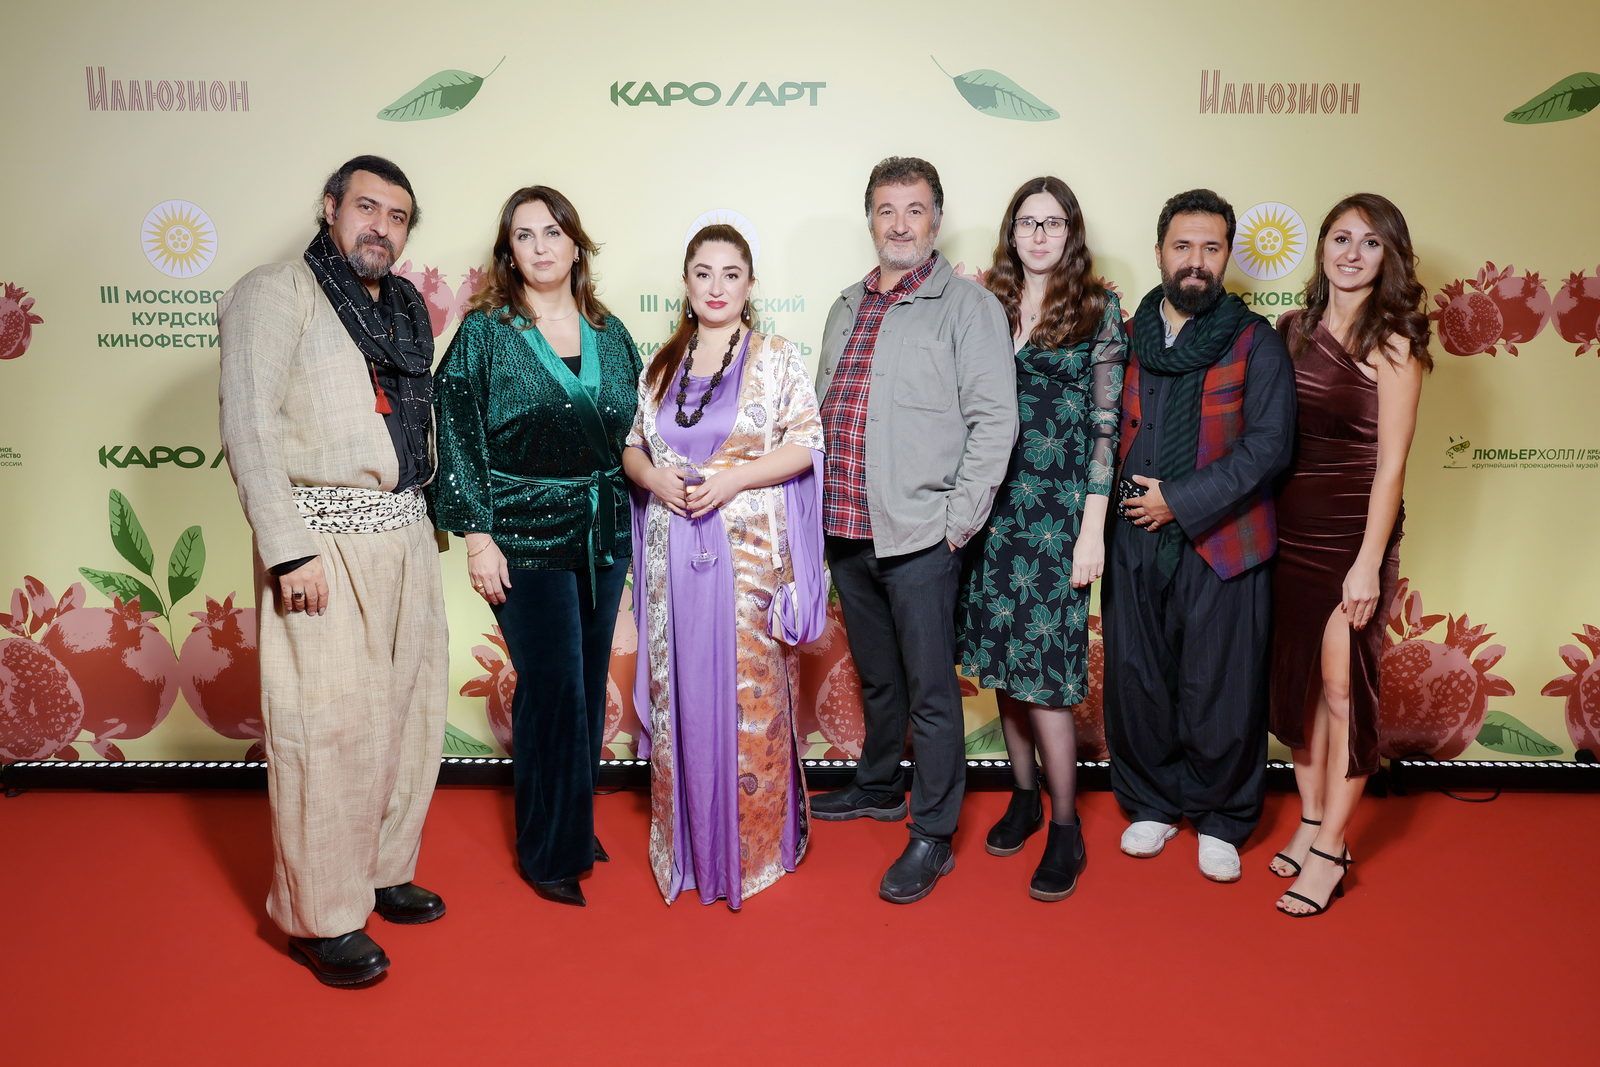 Объявлены победители III Московского Курдского кинофестиваля